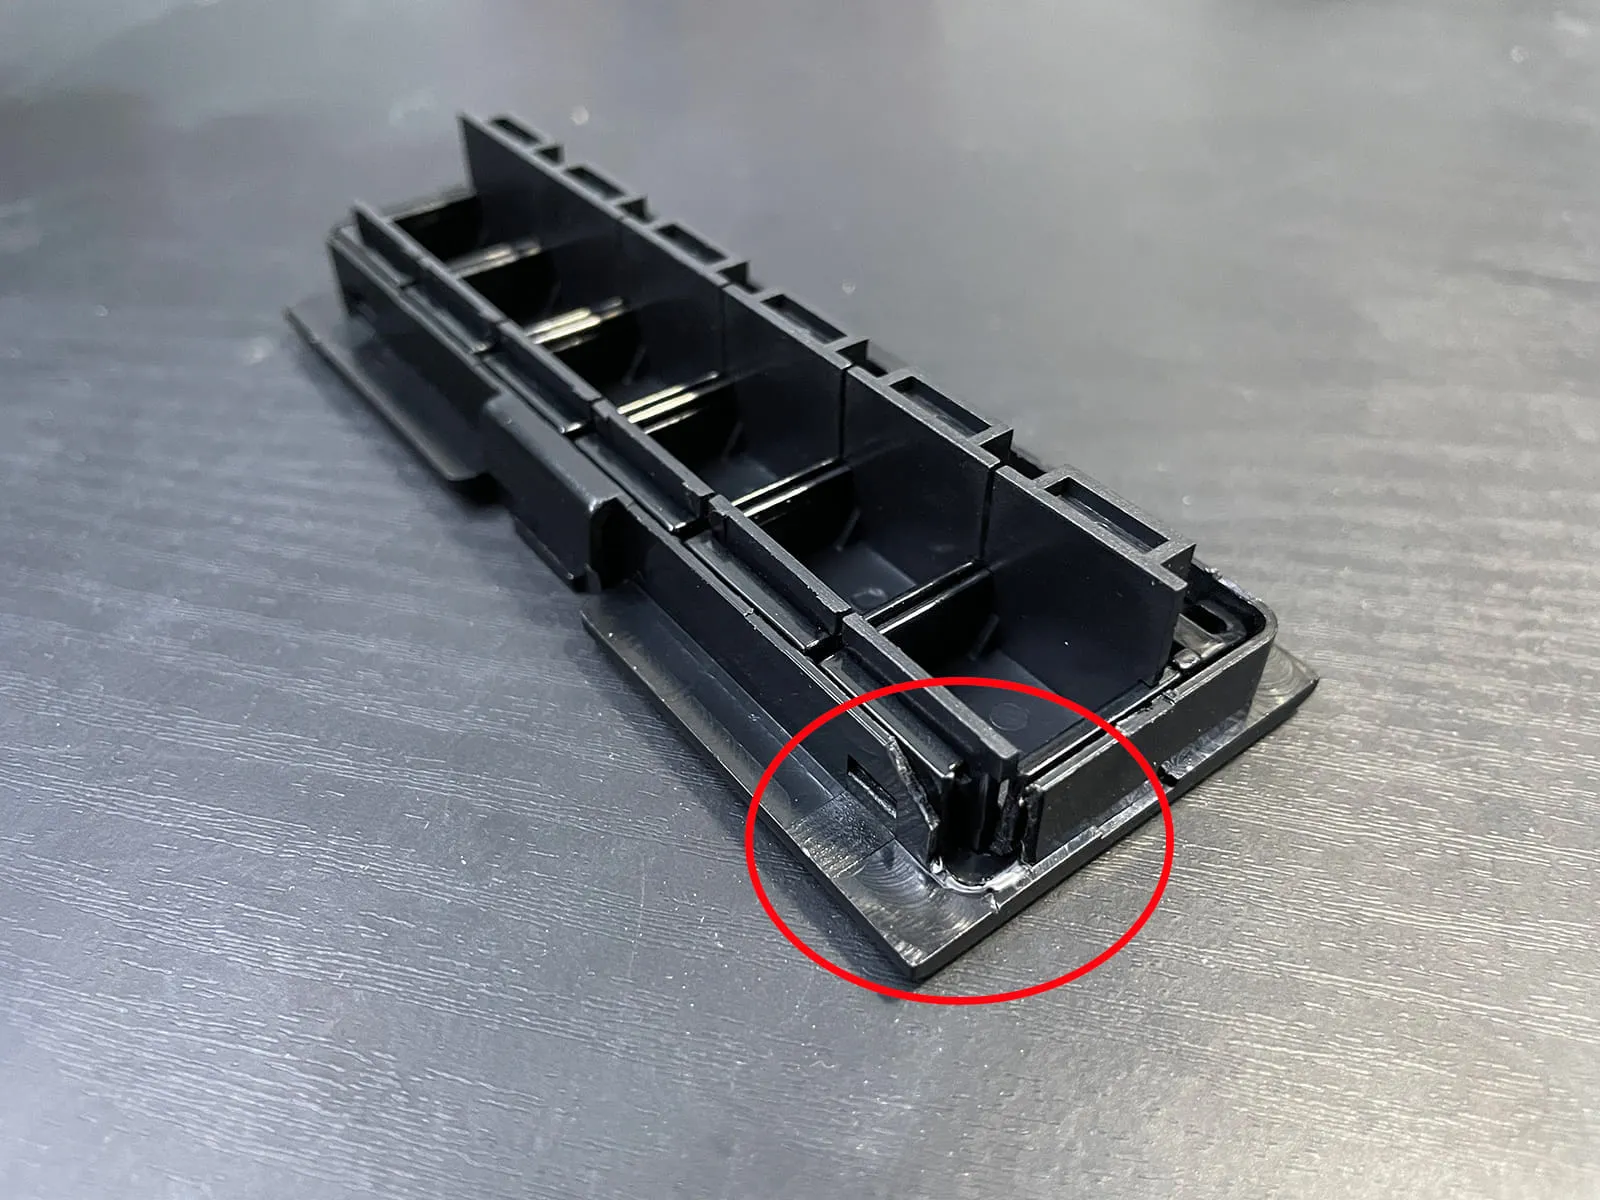 Modification of original panel module notch cut in corner